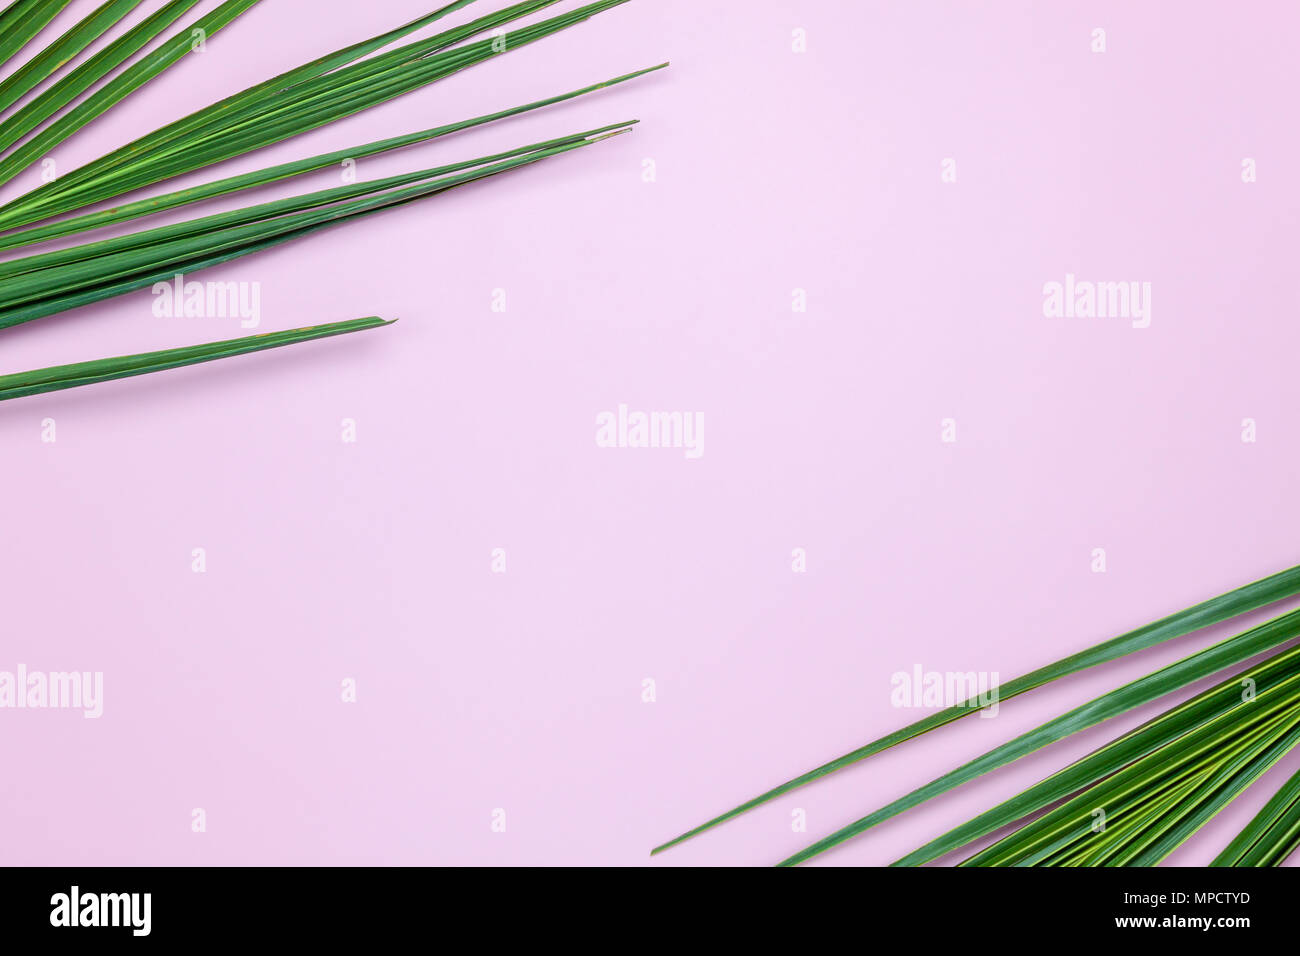 Table top visualizza immagine aerea di stagione estiva Vacanza il concetto di sfondo.piana di noce di cocco laici o palm foglia verde sul moderno rosa rustico sfondo della carta.libera Foto Stock